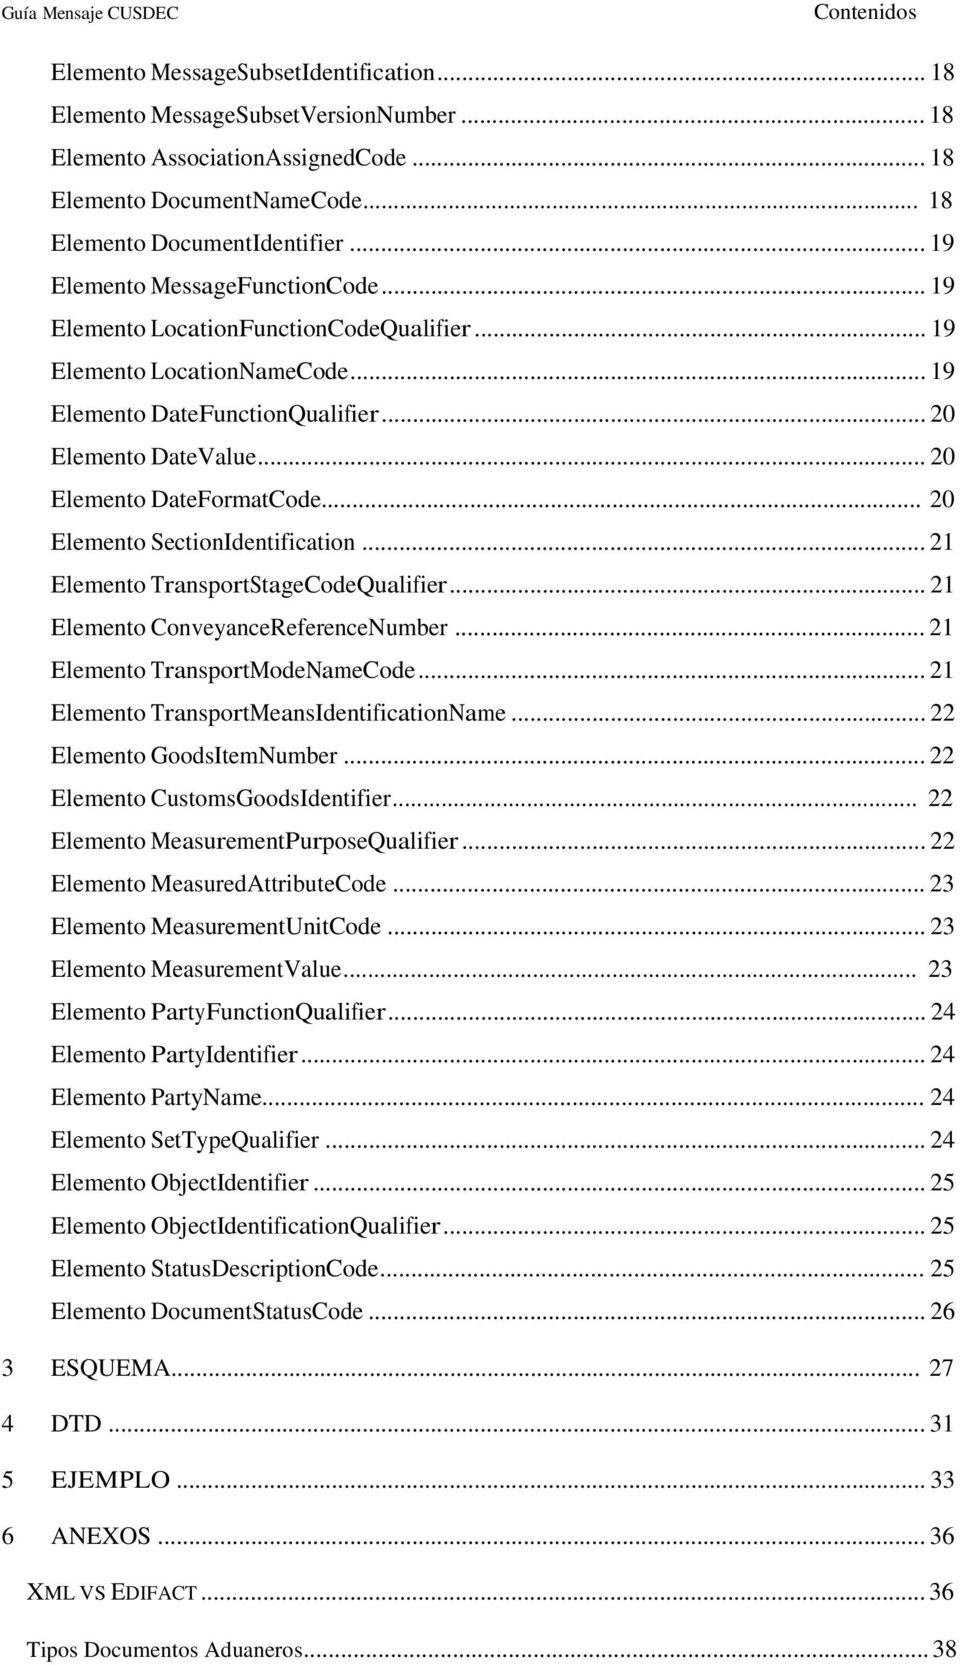 .. 20 Elemento DateFormatCode... 20 Elemento SectionIdentification... 21 Elemento TransportStageCodeQualifier... 21 Elemento ConveyanceReferenceNumber... 21 Elemento TransportModeNameCode.